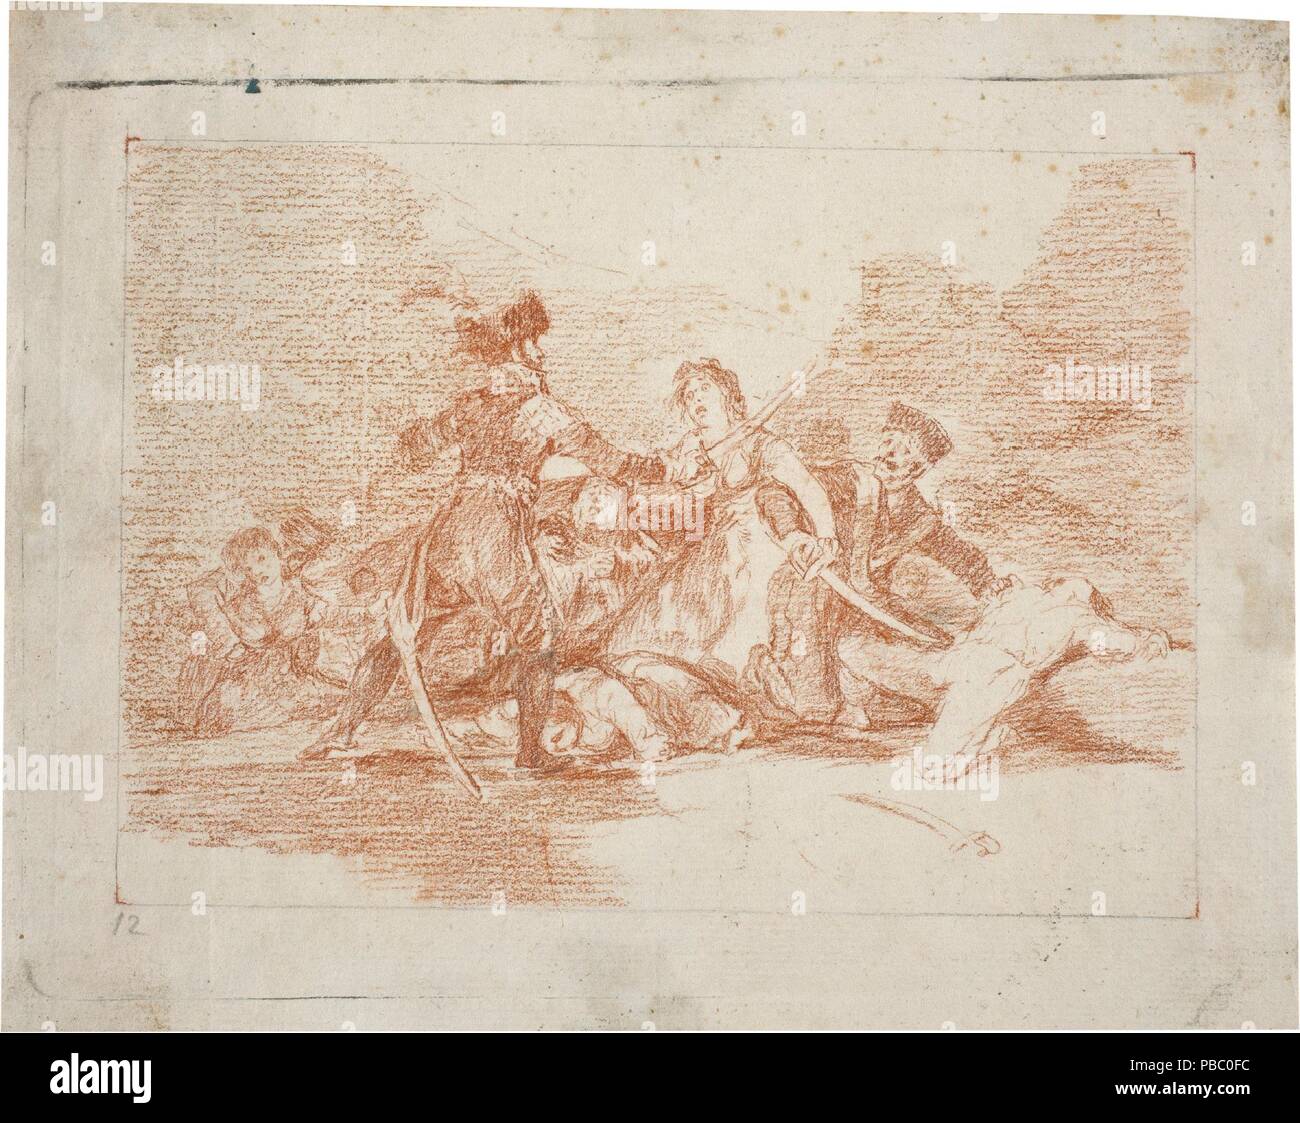 Francisco de Goya y Lucientes/' bleibt keine Zeit'. 1810 - 1814. Bleistift, Rötel auf Elfenbein Bütten. Museum: Museo del Prado, Madrid, España. Stockfoto